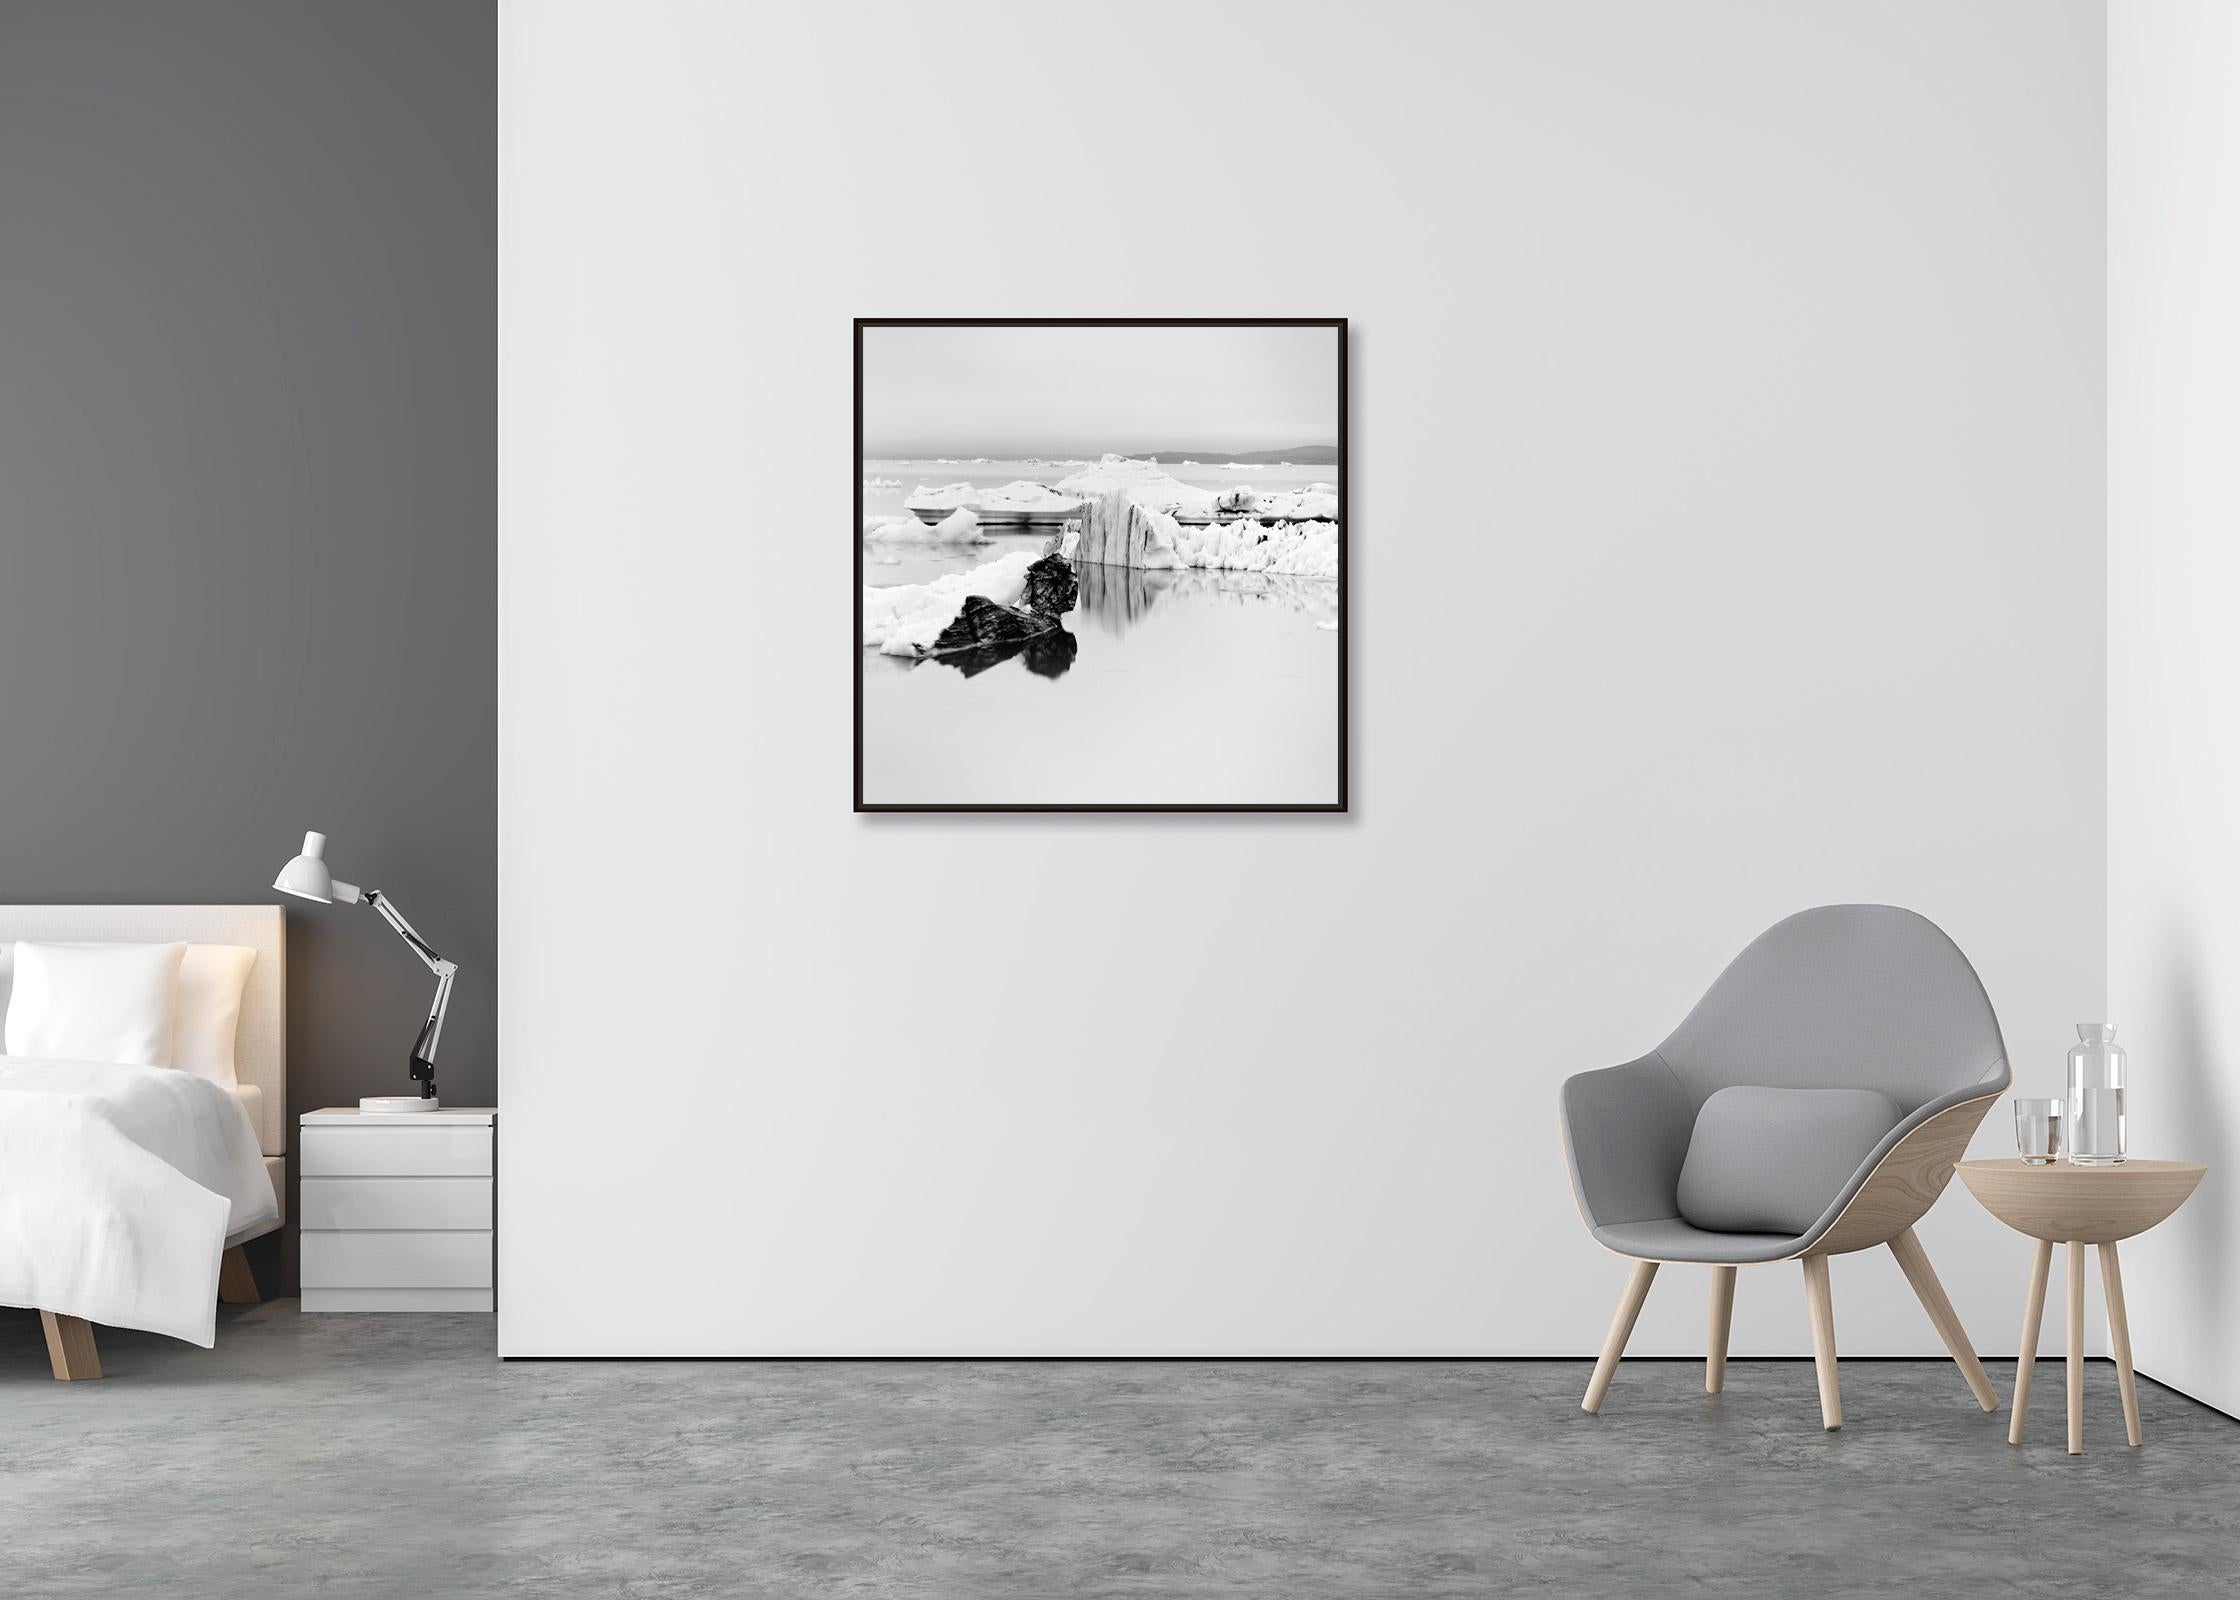 Eisberg, stiller Morgen, Island, Schwarz-Weiß-Fotografie der bildenden Kunst (Zeitgenössisch), Photograph, von Gerald Berghammer